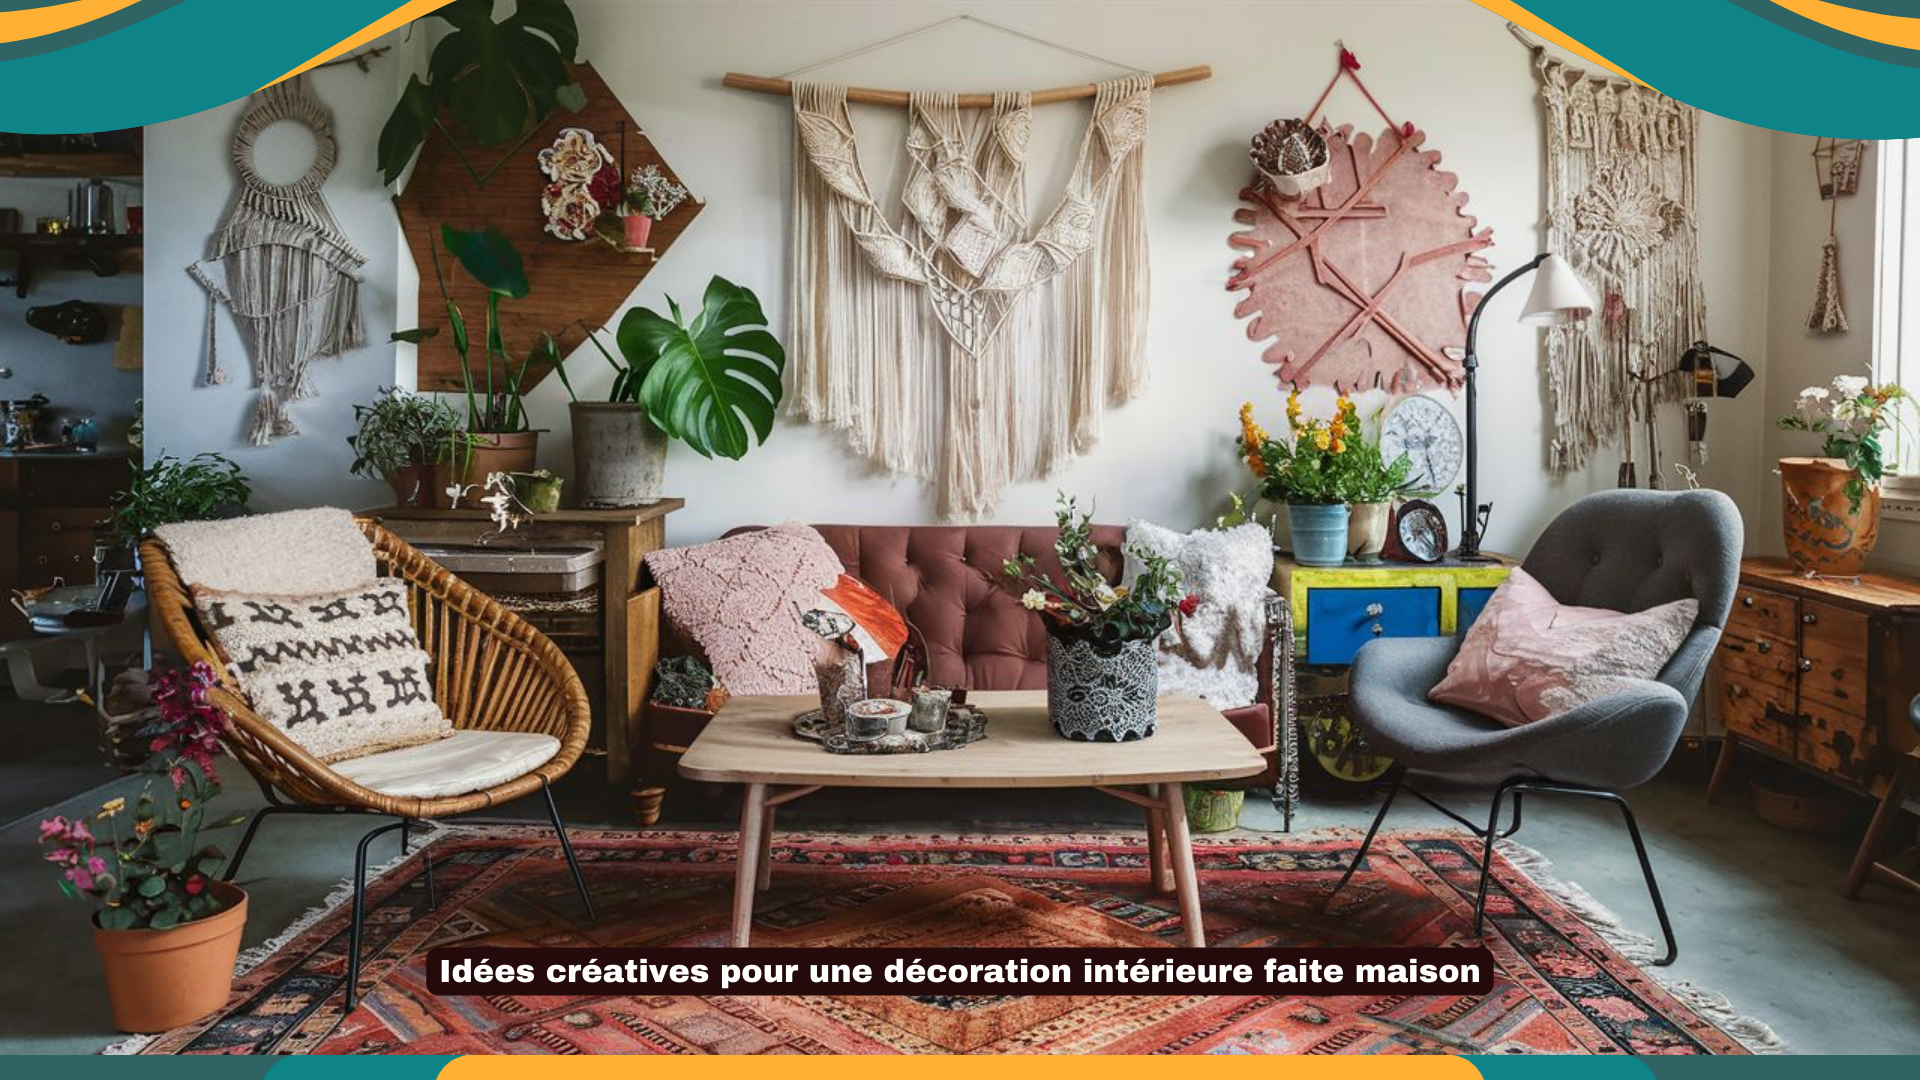 Idées créatives pour une décoration intérieure faite maison